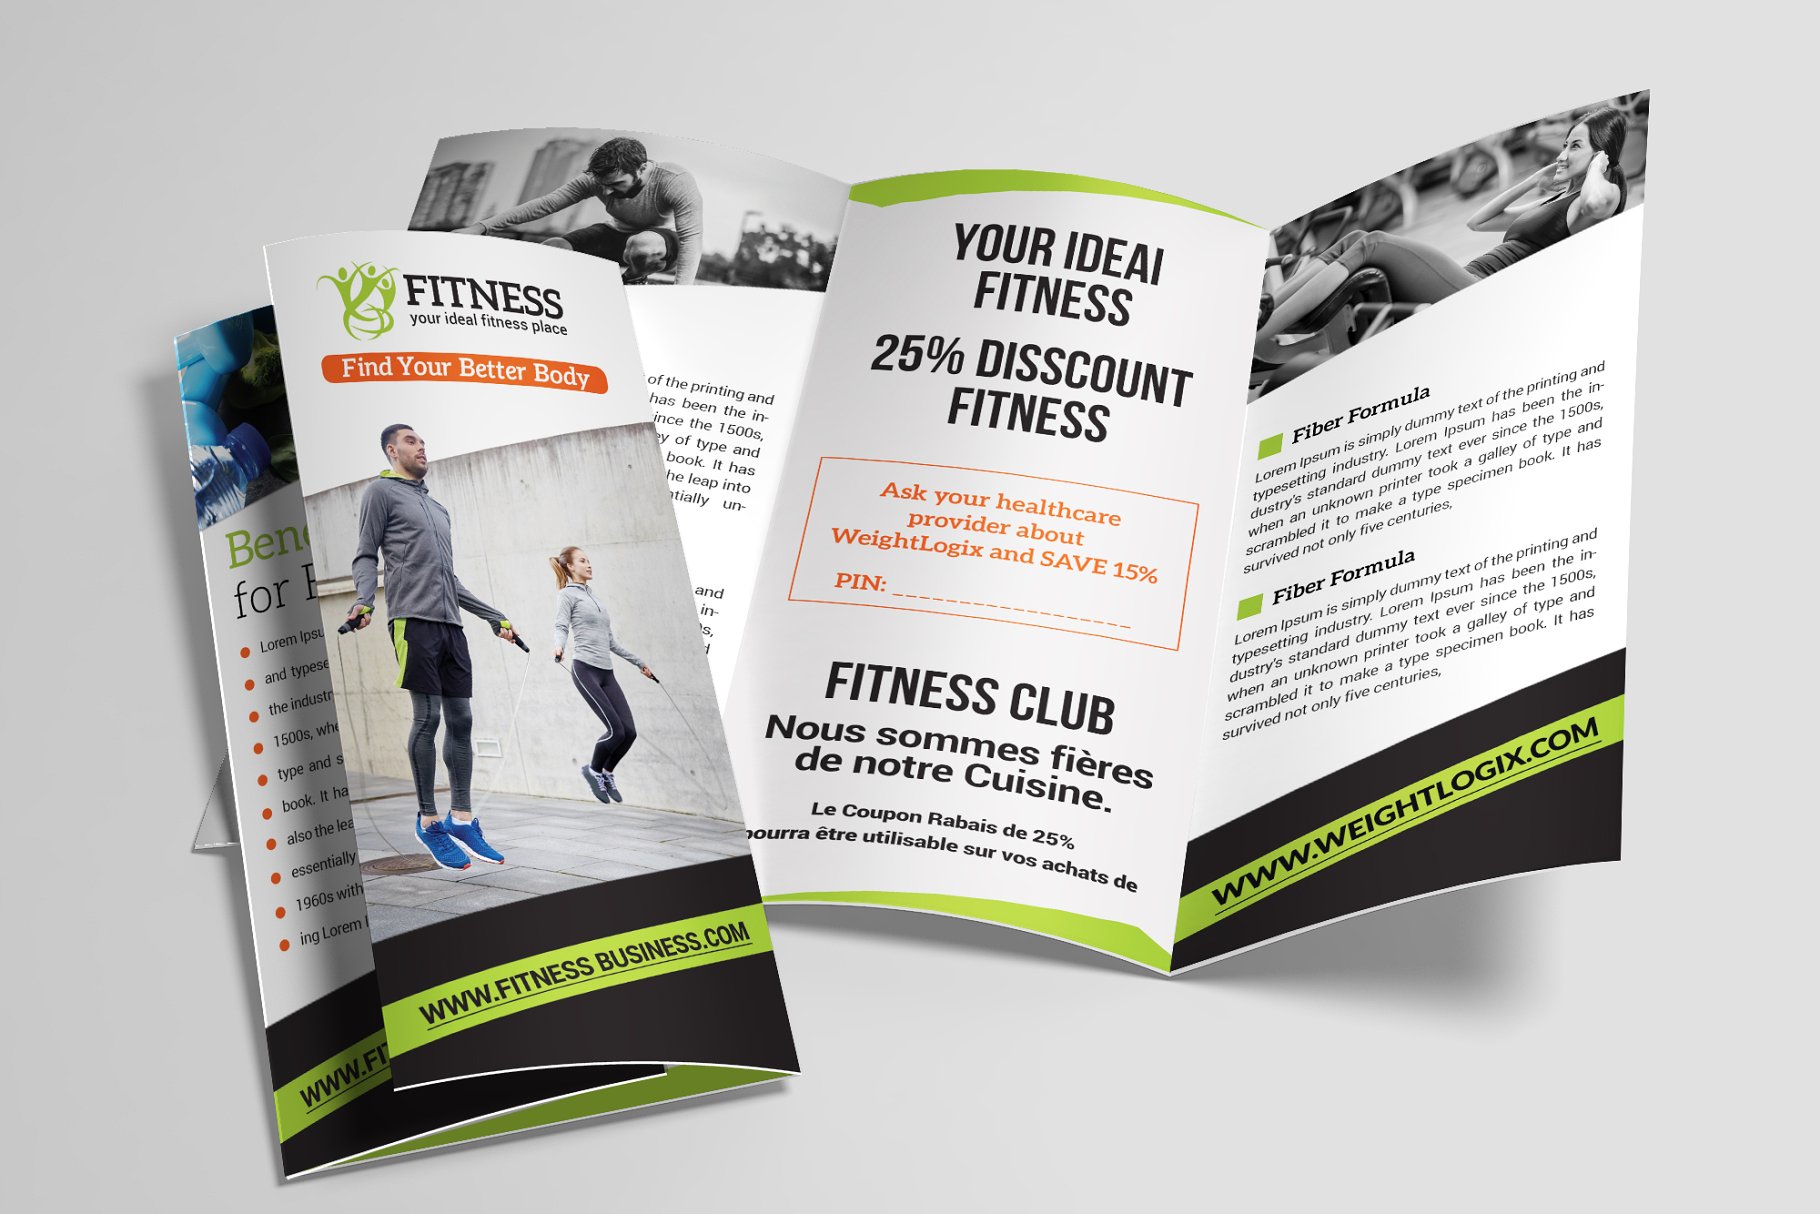 健身健美机构宣传小册子模板合集 Fitness Trifold Brochures Bundle插图(1)